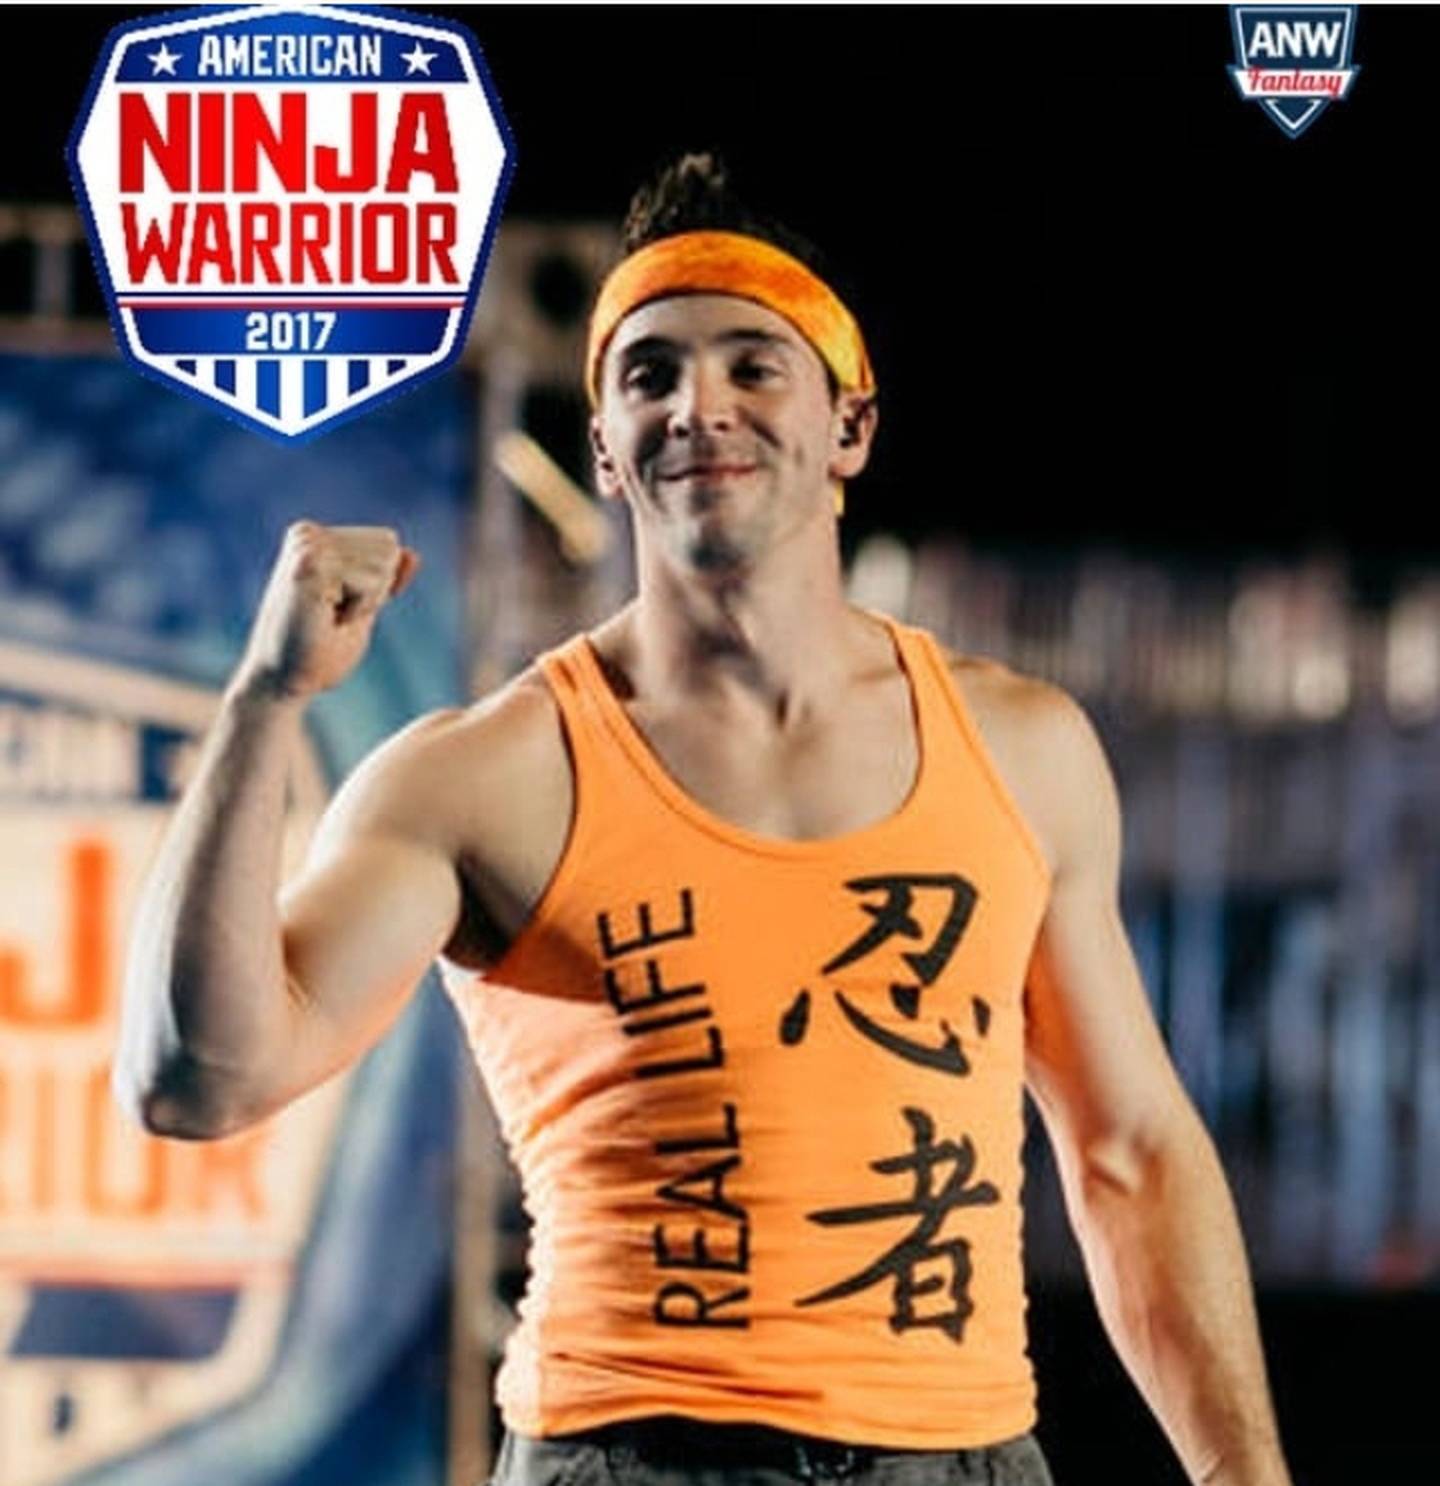 Drew Dreschel American Ninja Warrior